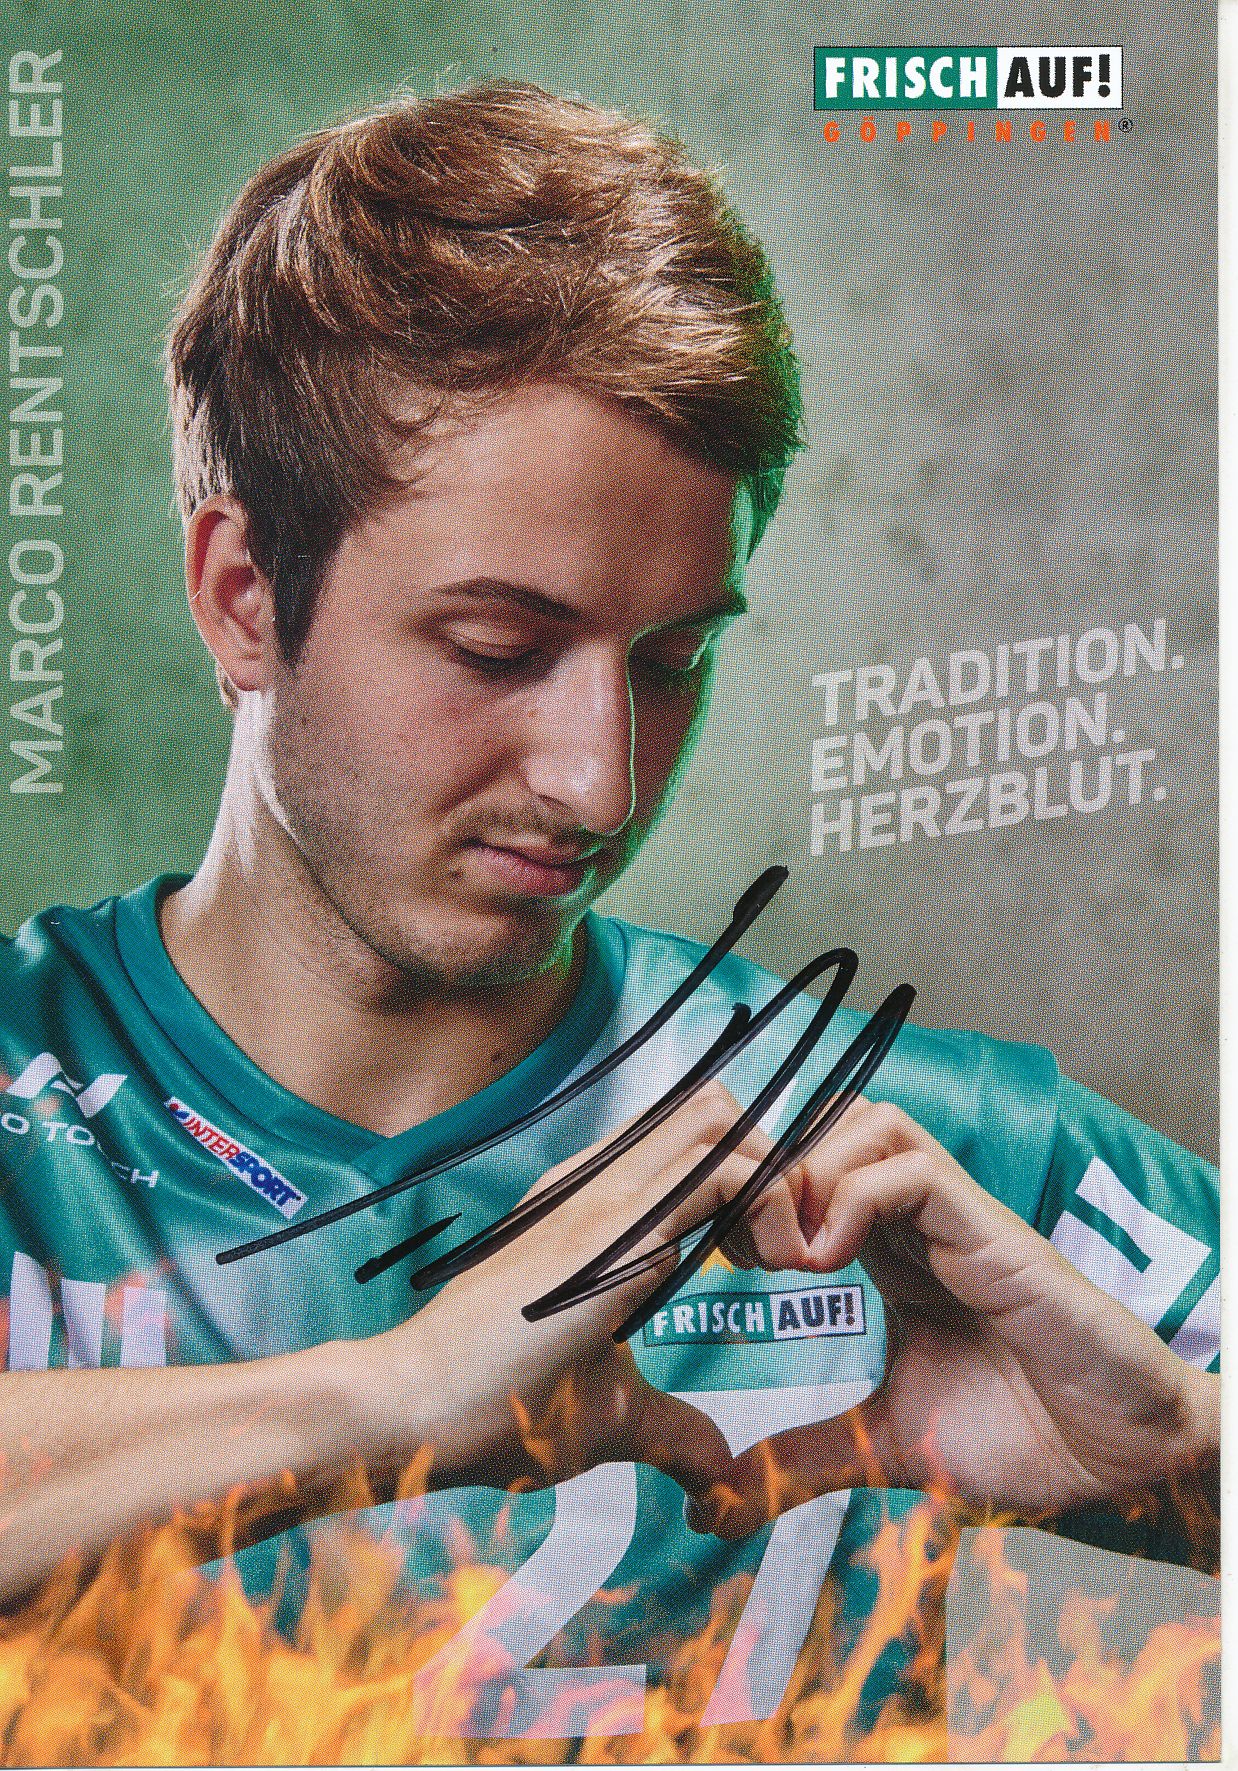 Marco Rentschler  Frisch auf Göppingen Handball Autogrammkarte signiert  362018 